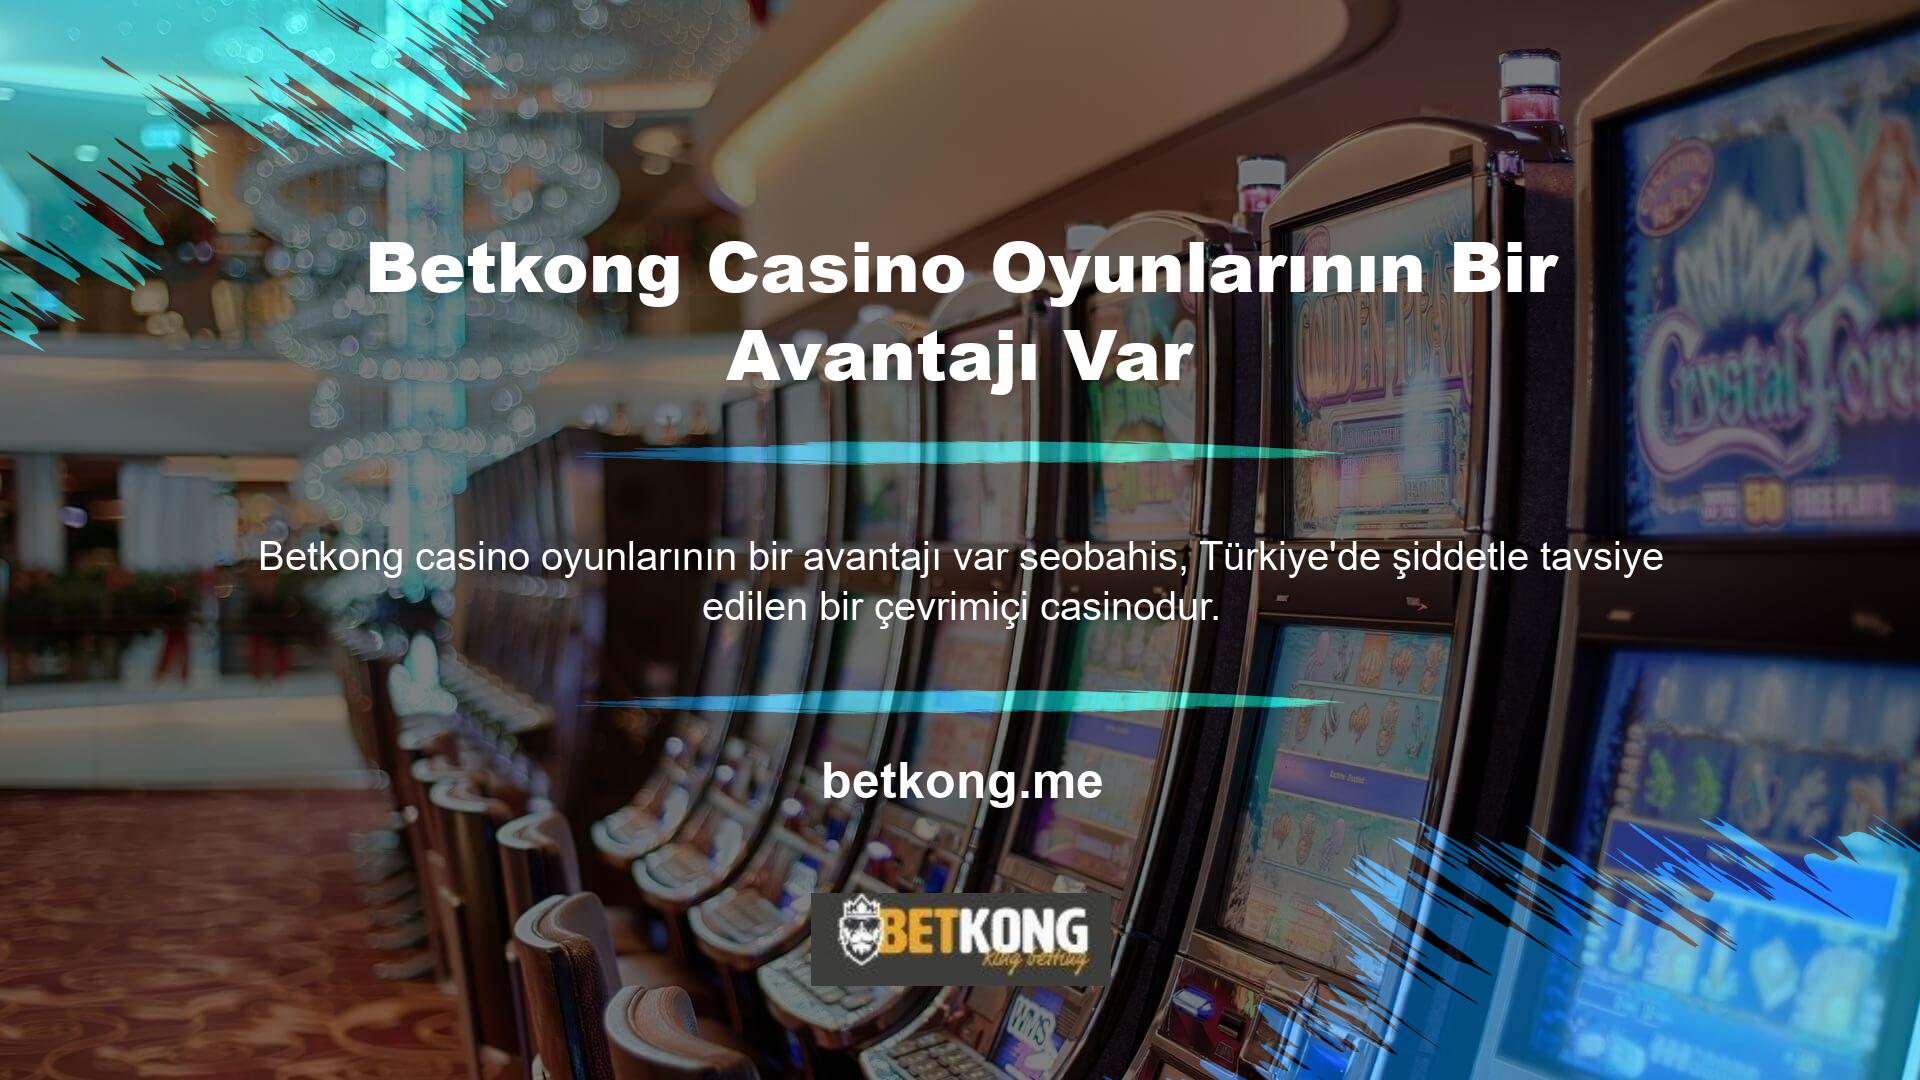 Bahis sitelerinin sunduğu en popüler ve kaliteli casino oyunlarına göz atın